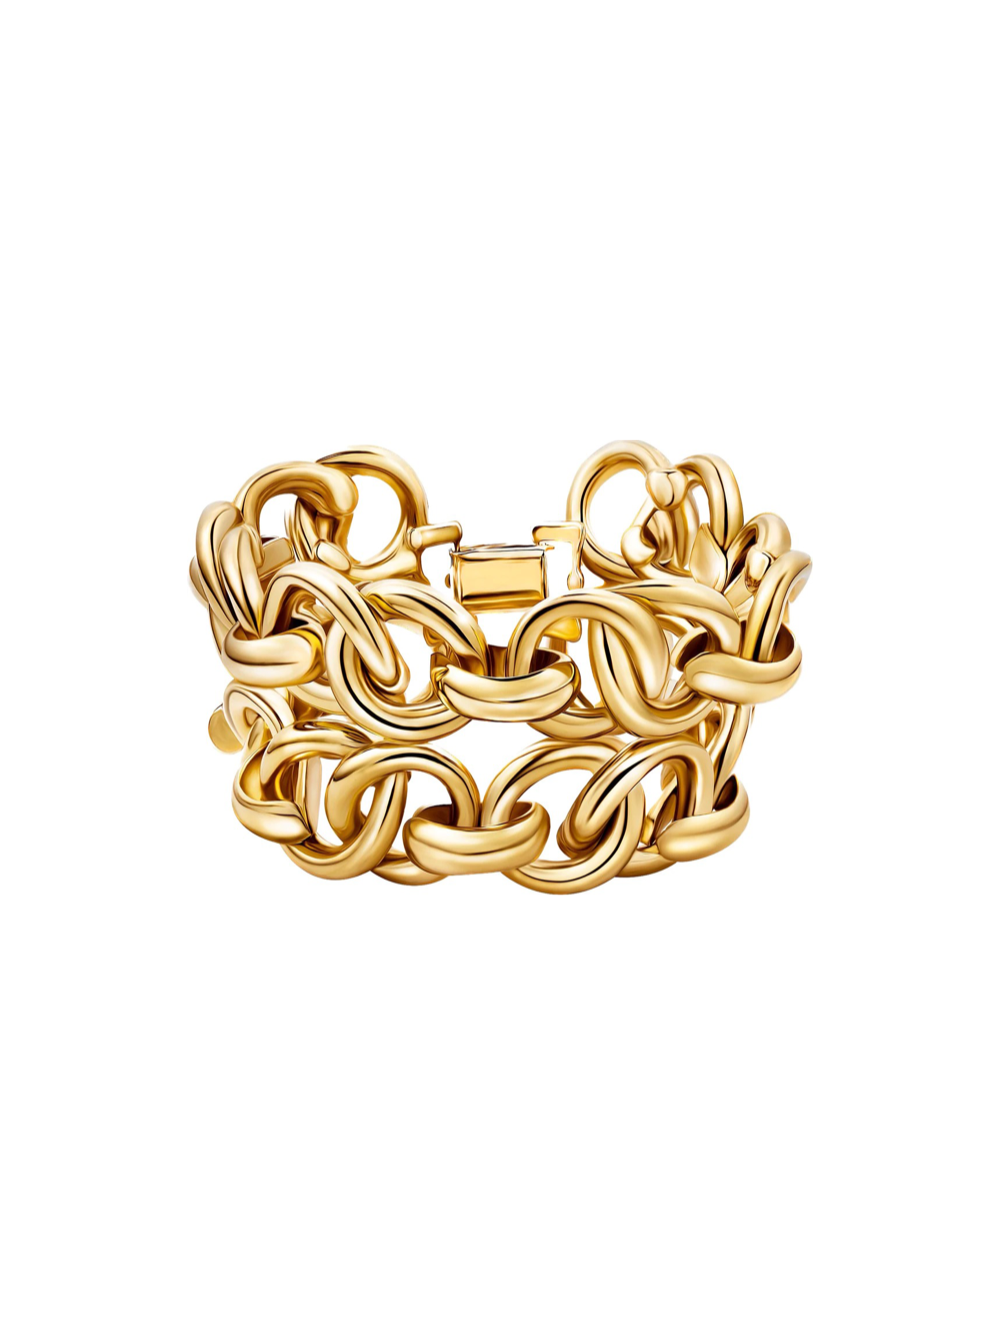 Christina Caruso Love Link Bracelet in Gold